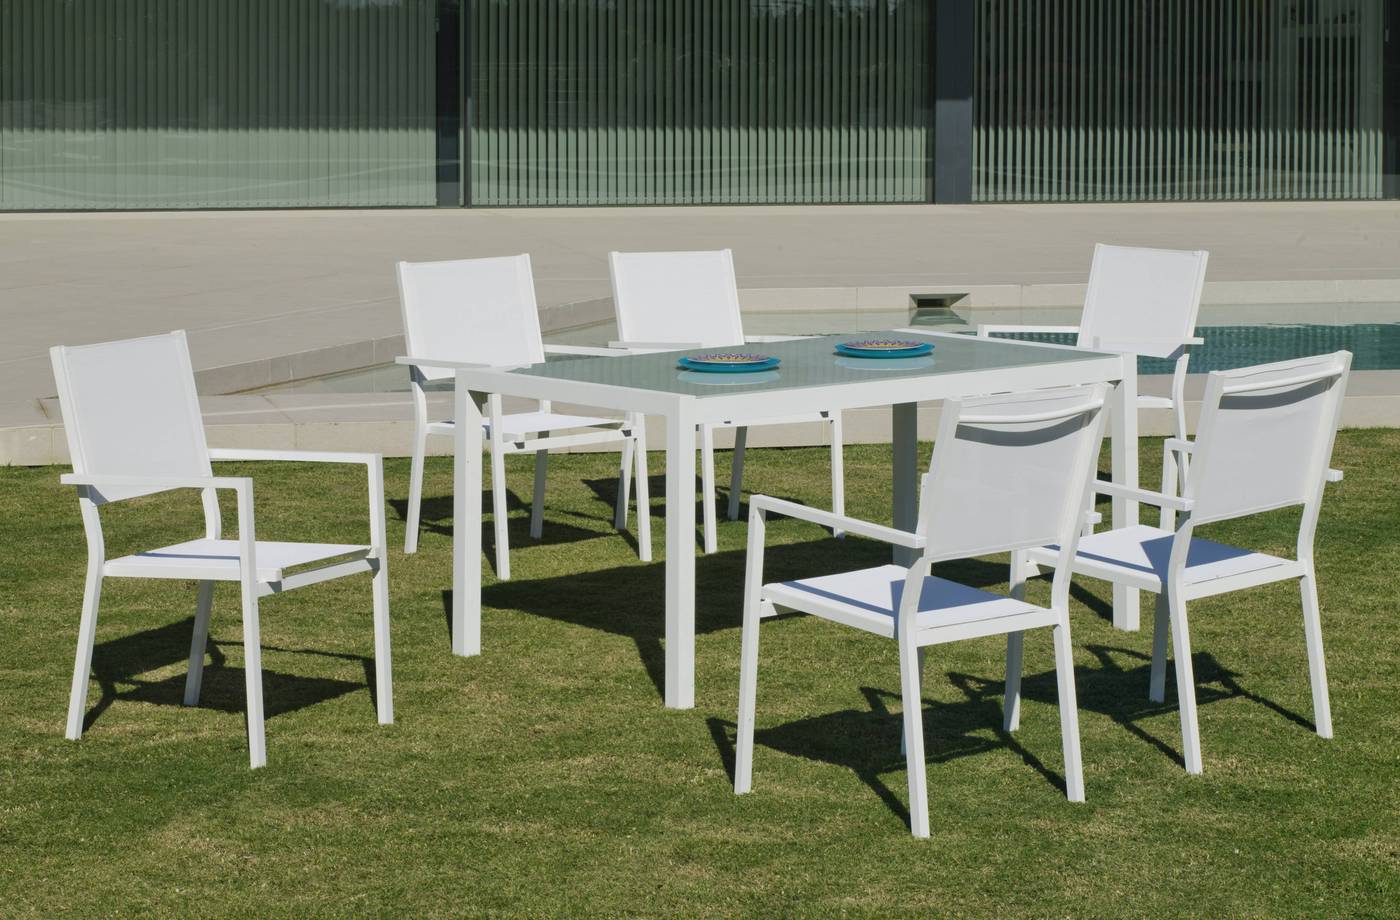 Conjunto aluminio para jardín: Mesa rectangular 160 cm + 4 sillones de textilen. Disponible en color blanco, plata y antracita.